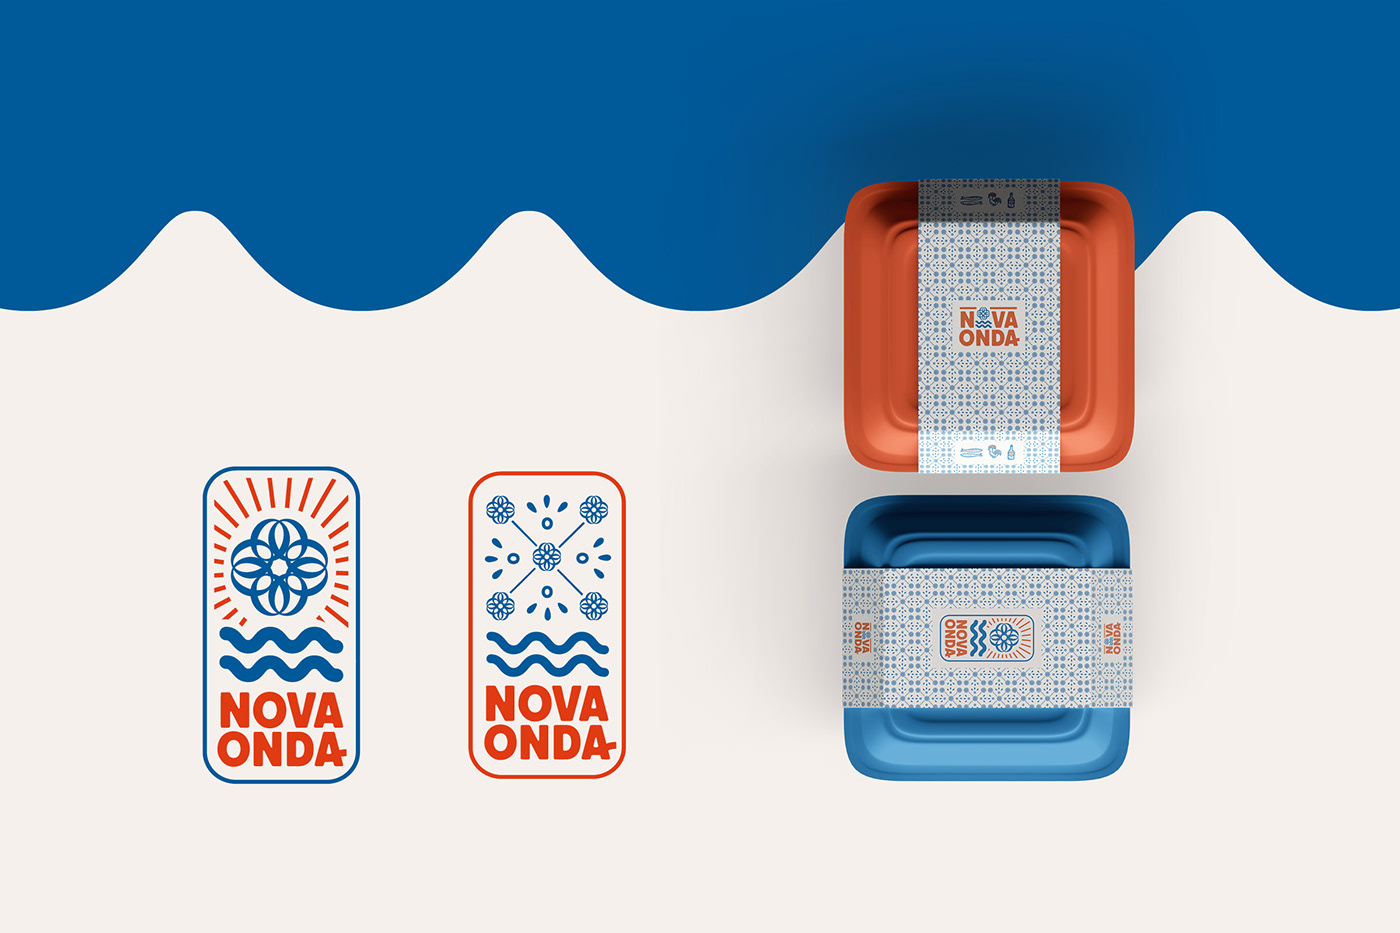 deux drapeaux Nova Onda et deux boites de nourritures avec un pattern azujelo